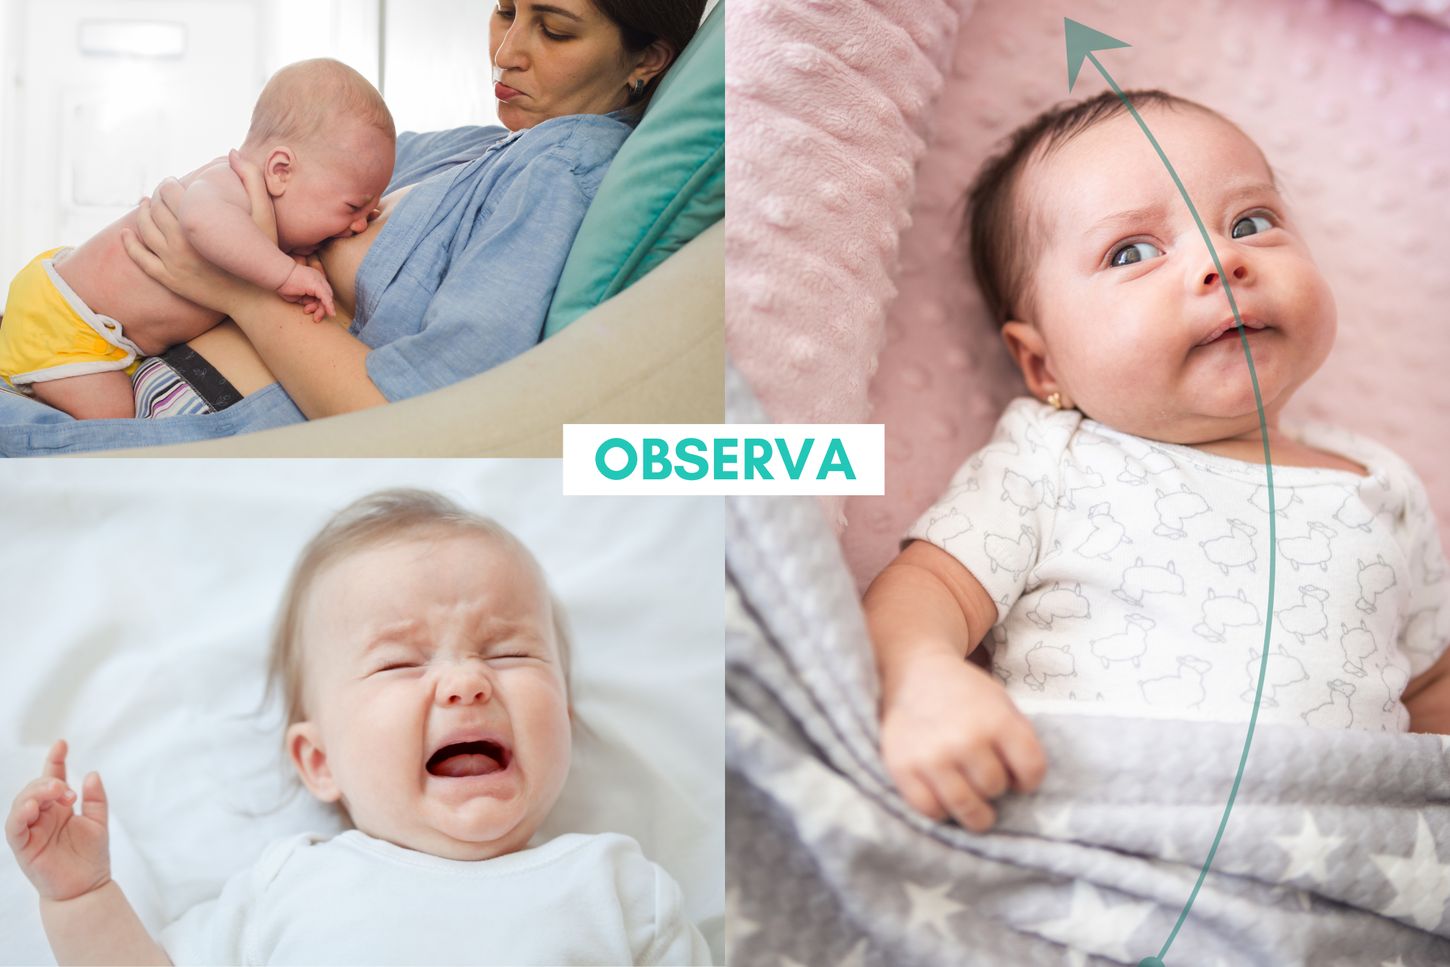 Tensión dural en bebés: un enfoque osteopático holístico